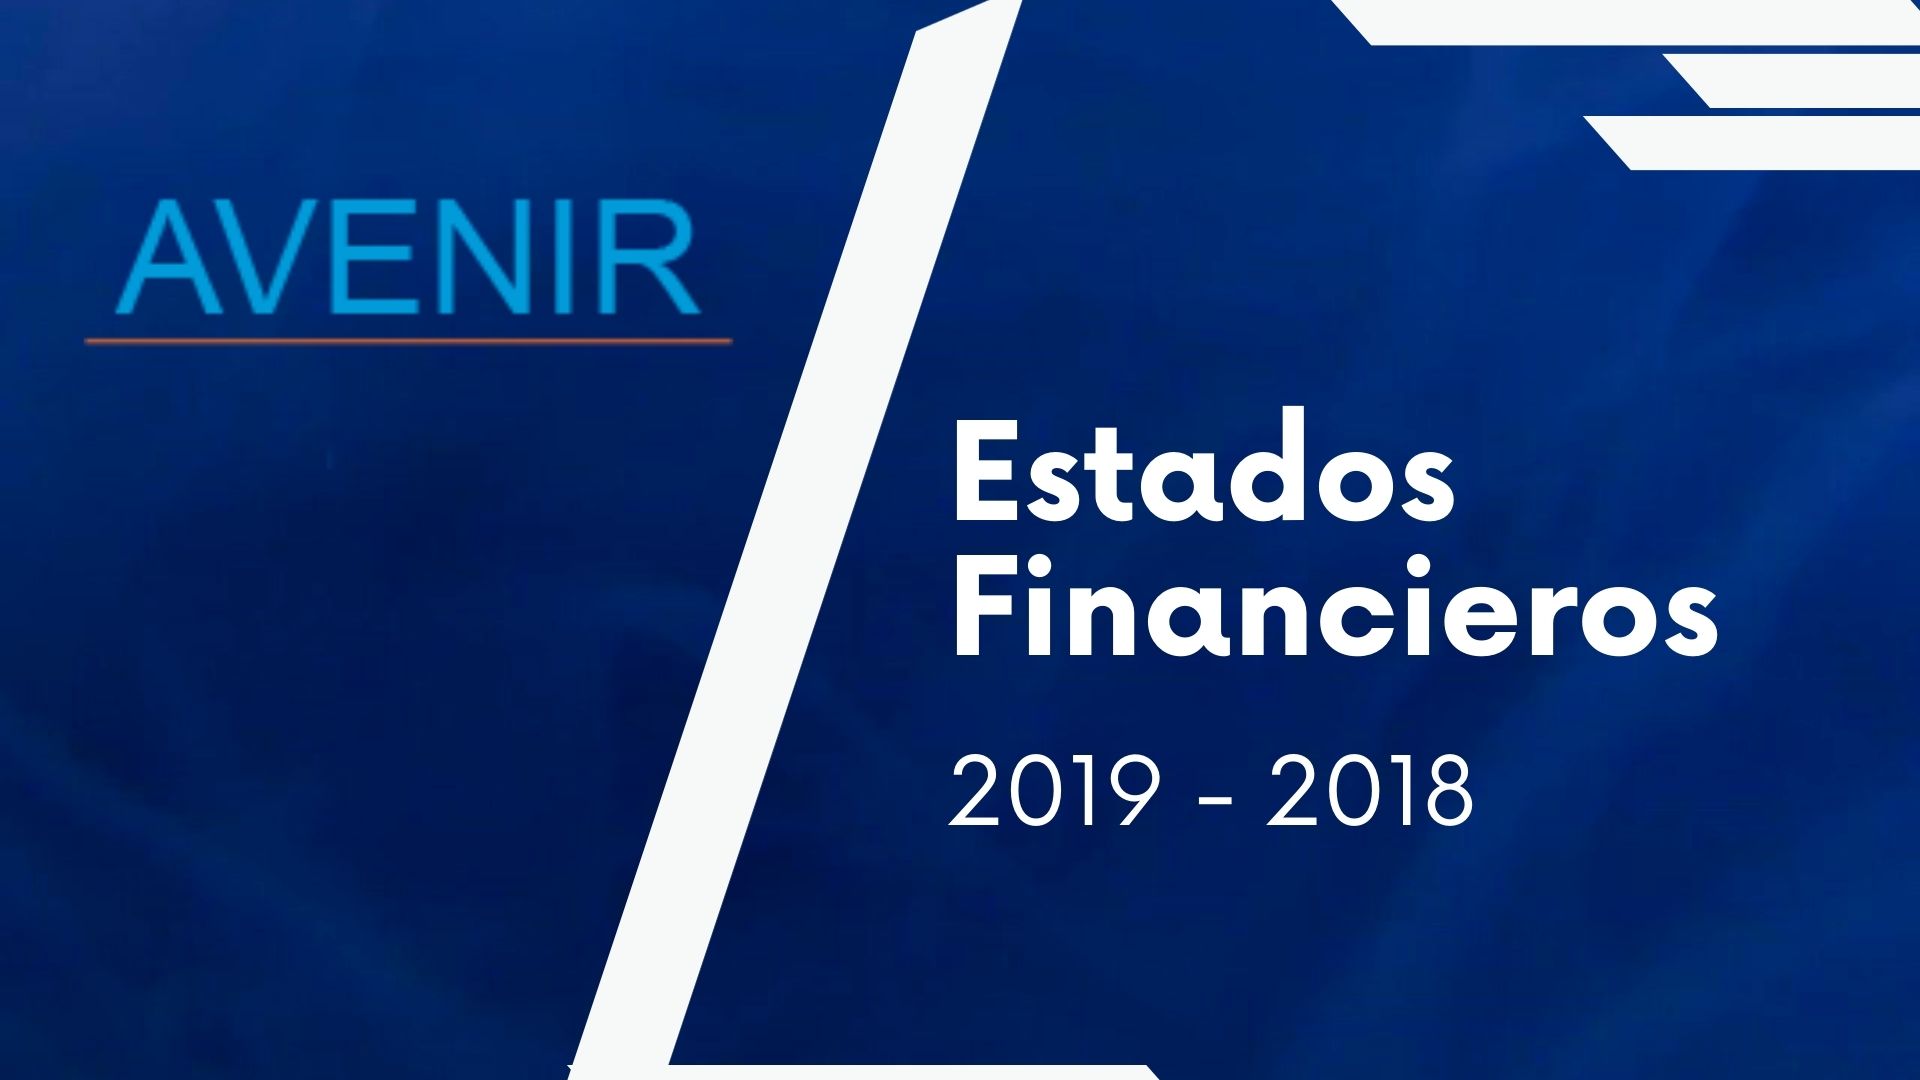 avenir-salud-contenido-estados-financieros-2019-2018